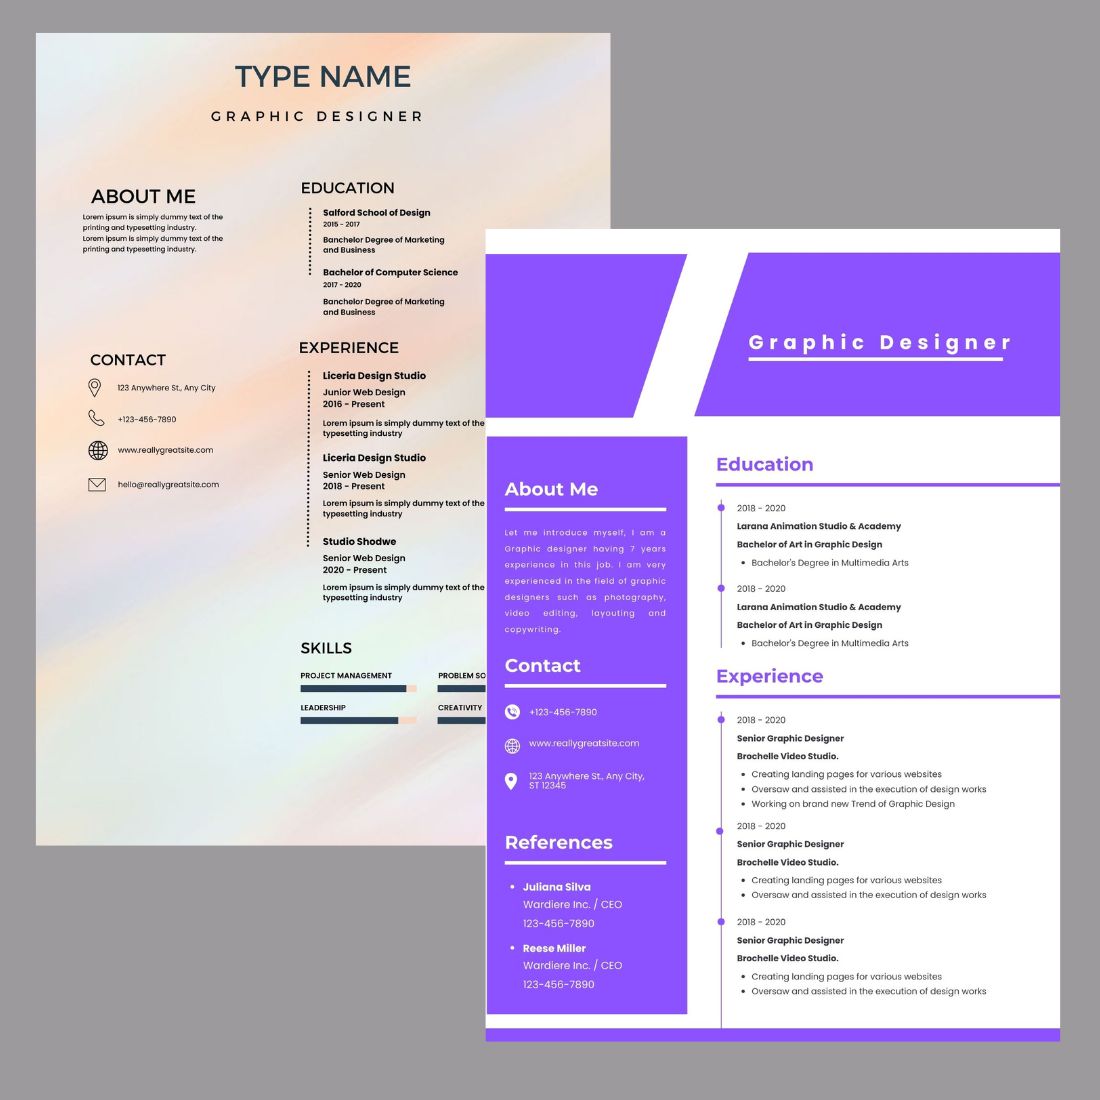 Graphic Designer Resume cover image.